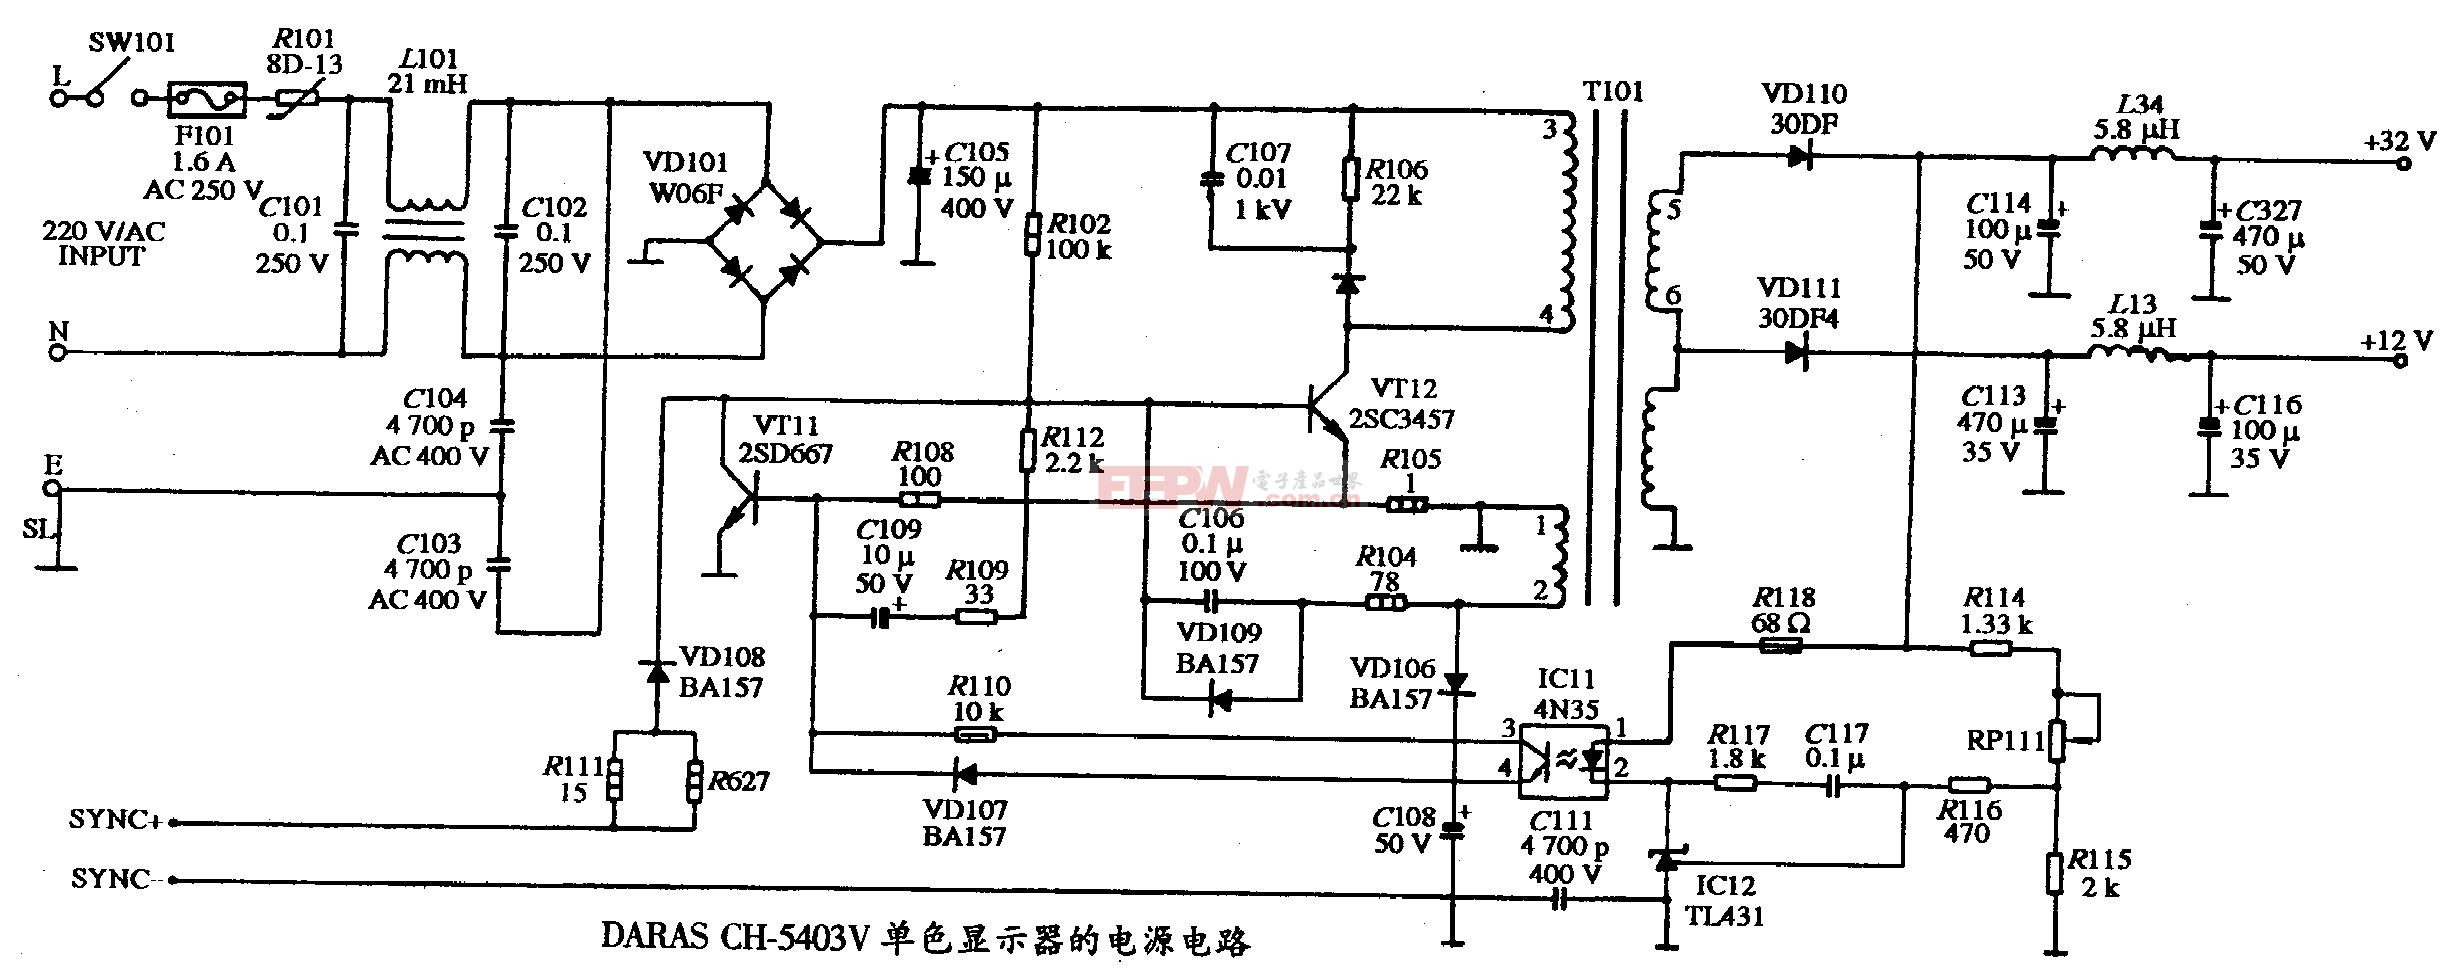 38、DARAS CH-5403V型单色显示器的电源电路图